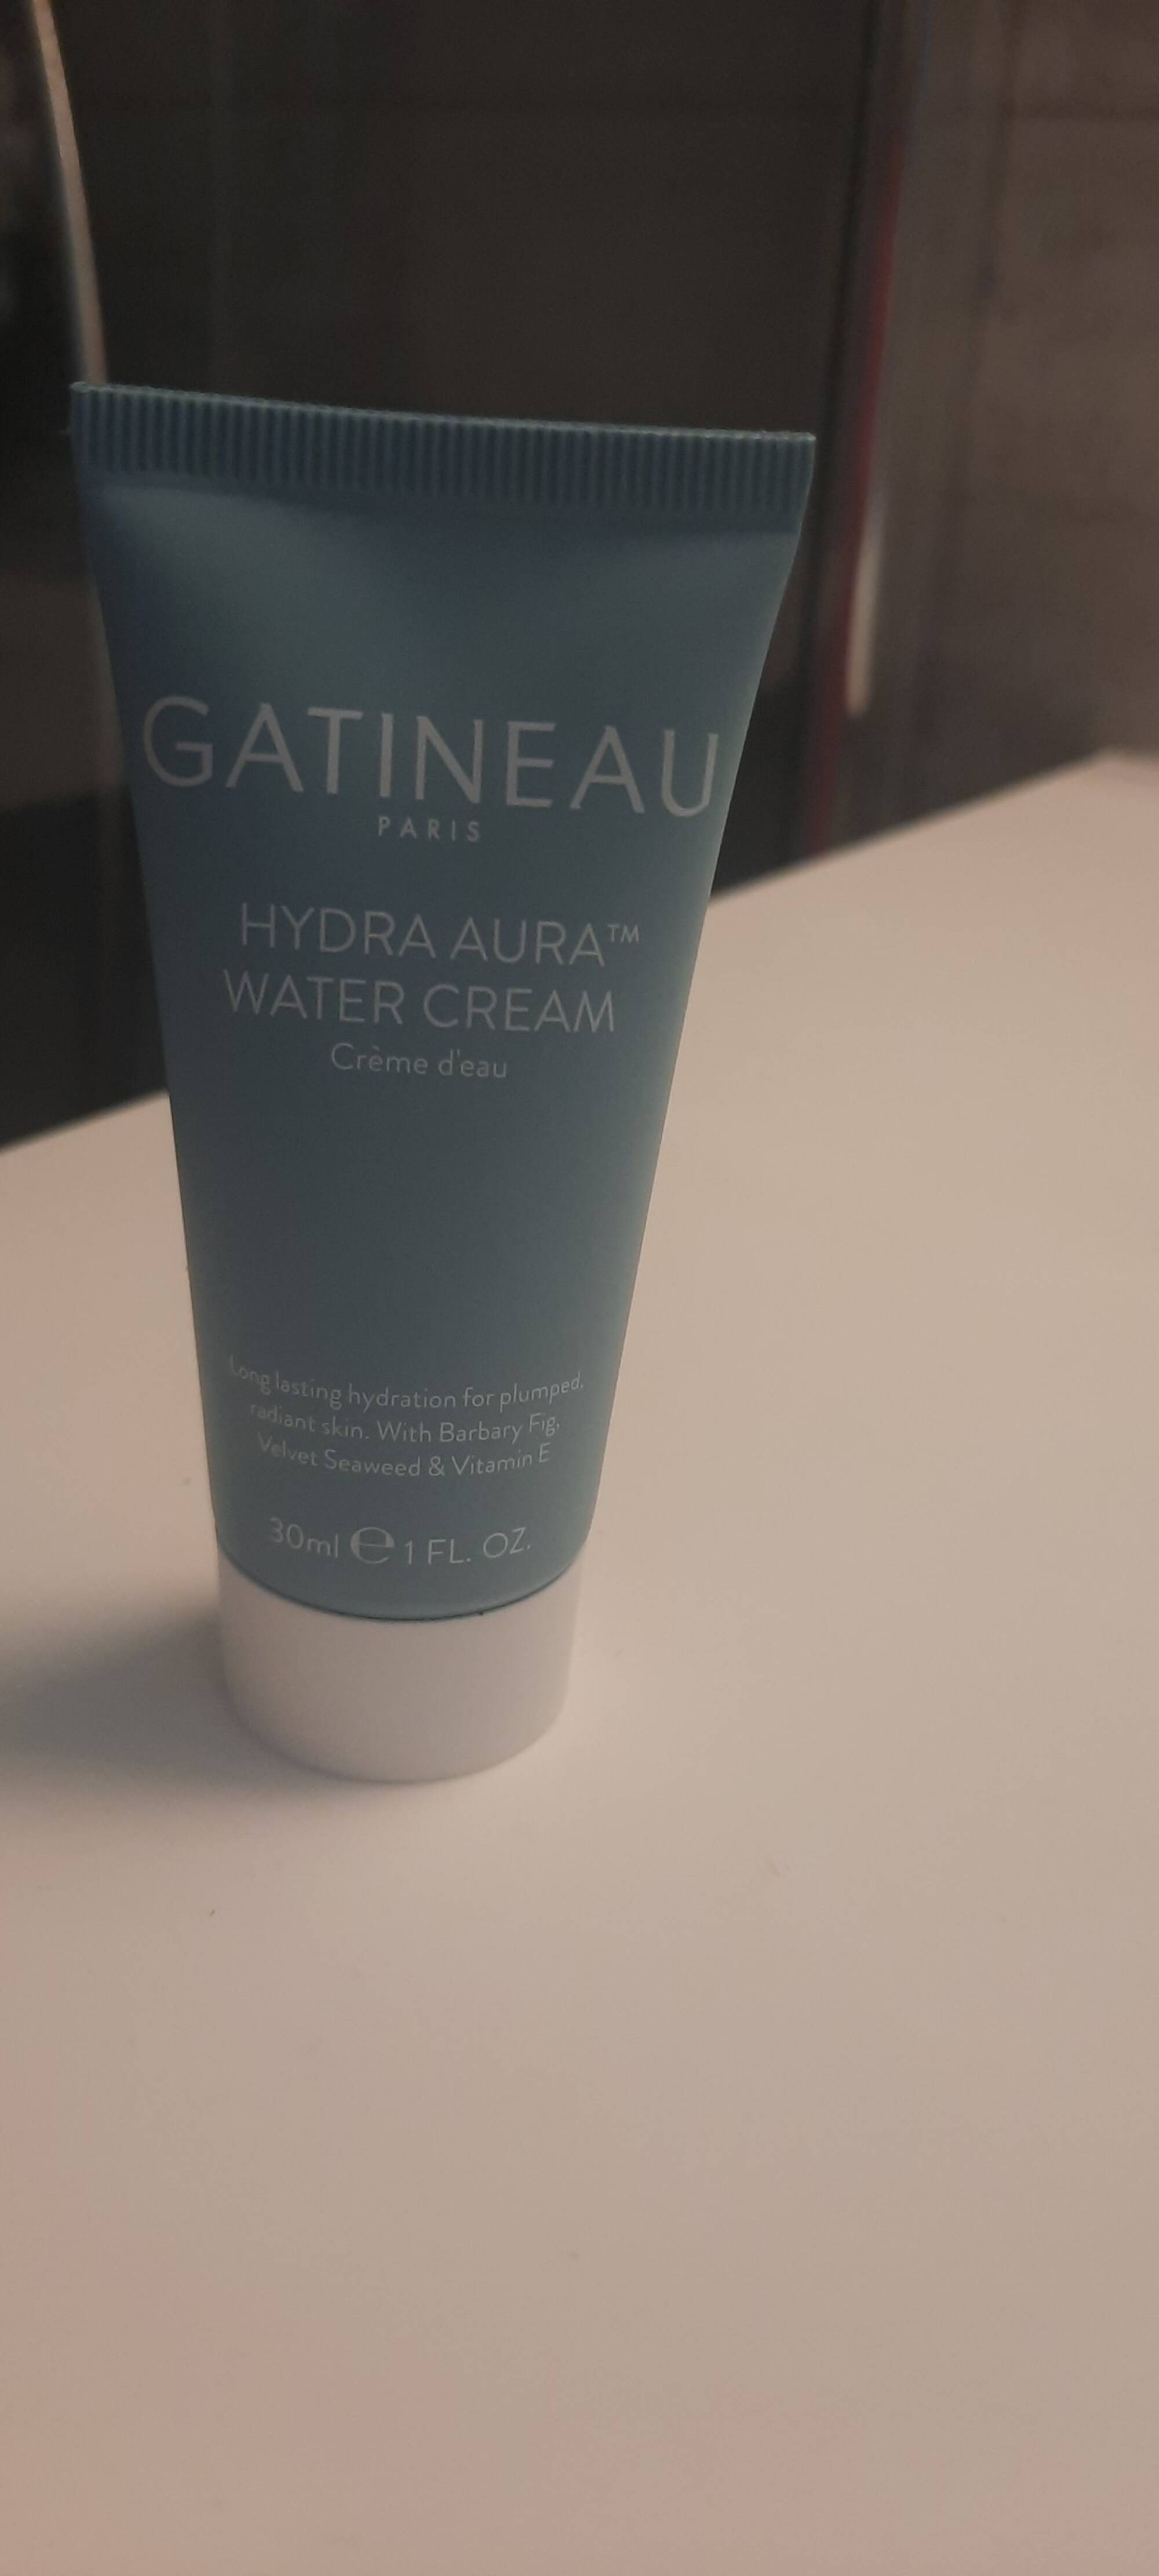 GATINEAU - Hydra aura - Crème d'eau